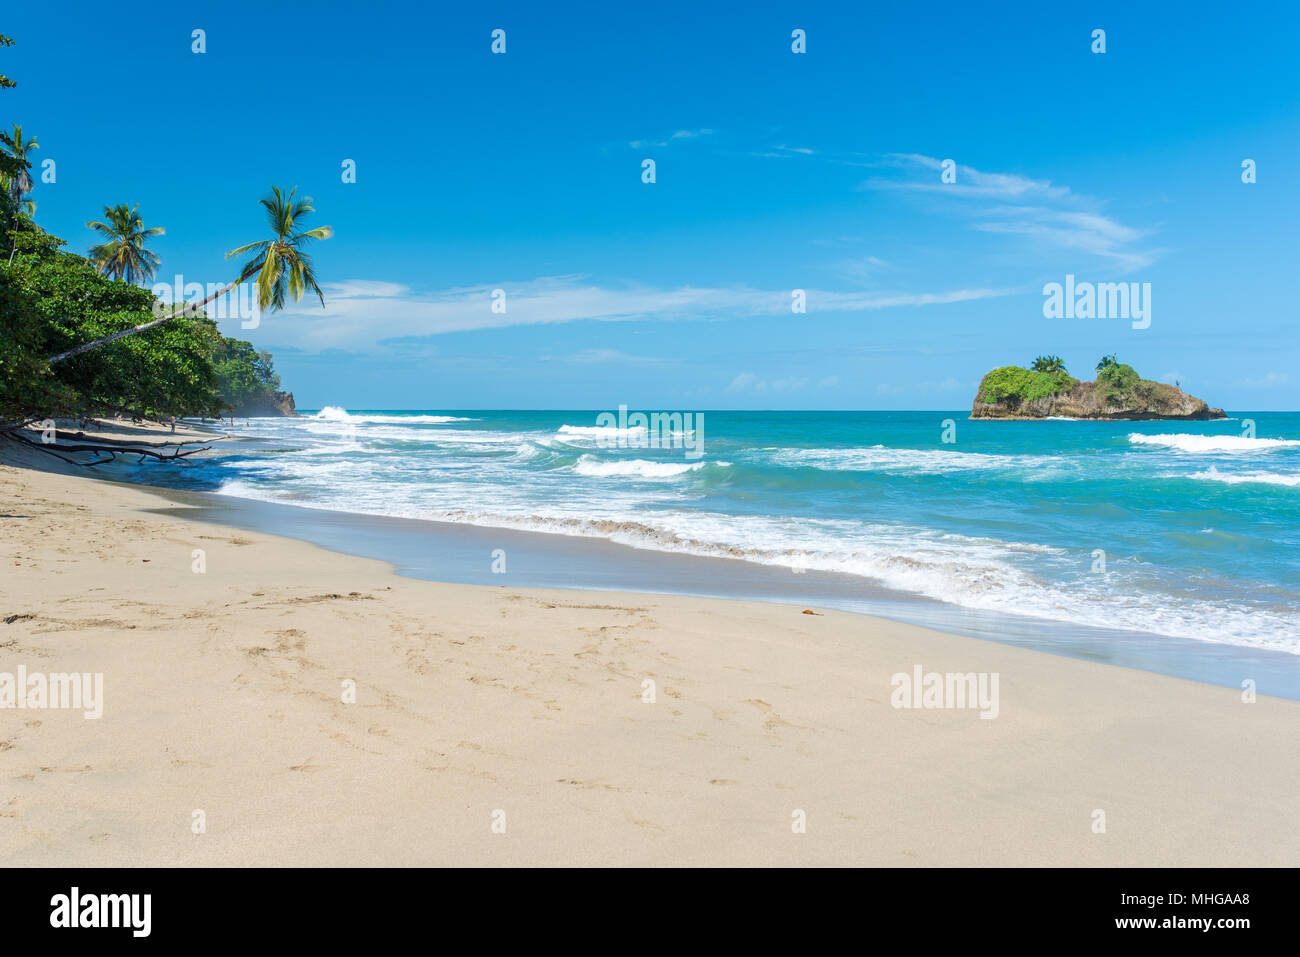 Playa Cocles - beautiful tropical beach près de Puerto Viejo - Costa Rica Banque D'Images